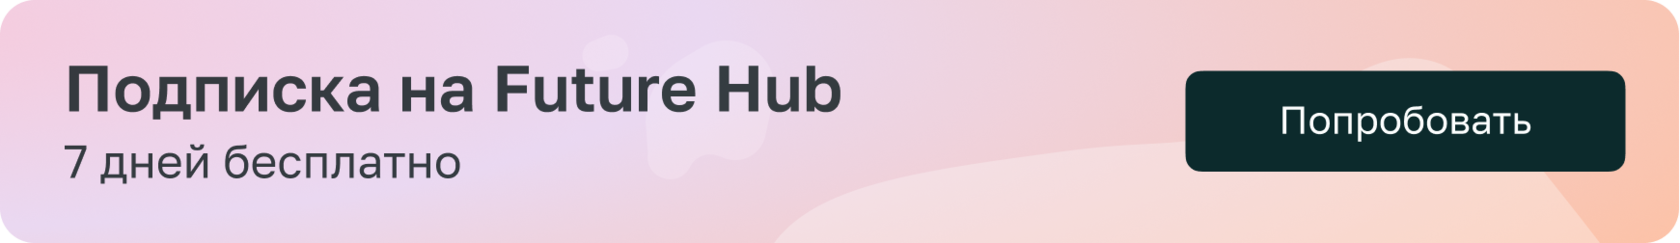 Подписка на Future Hub